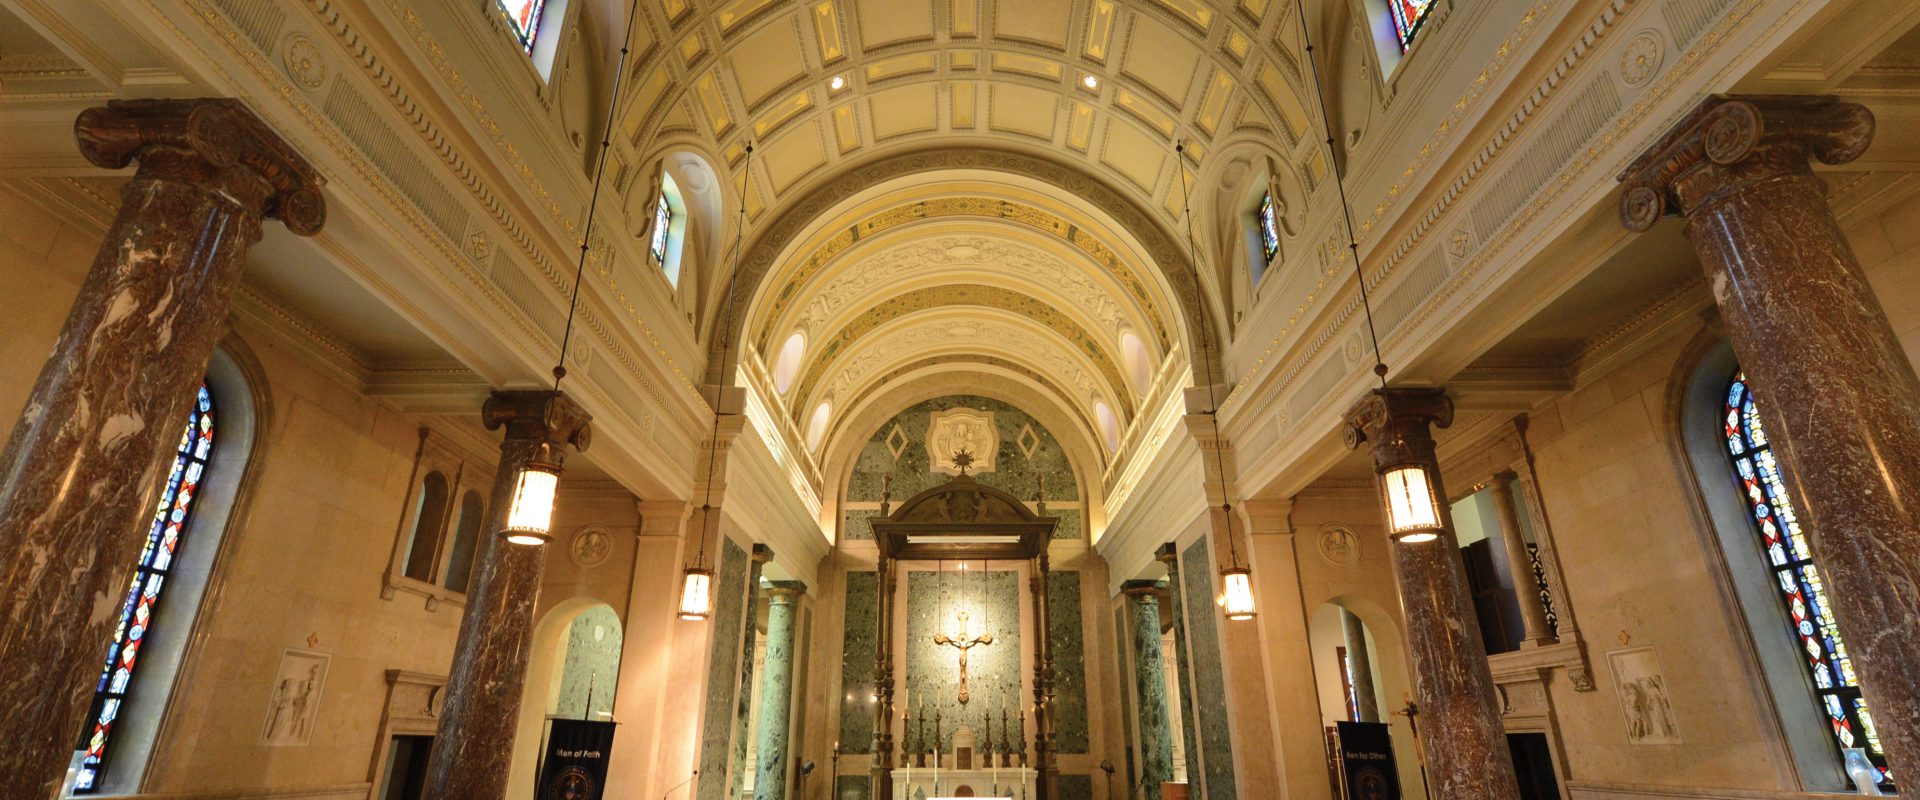 chapel-inside